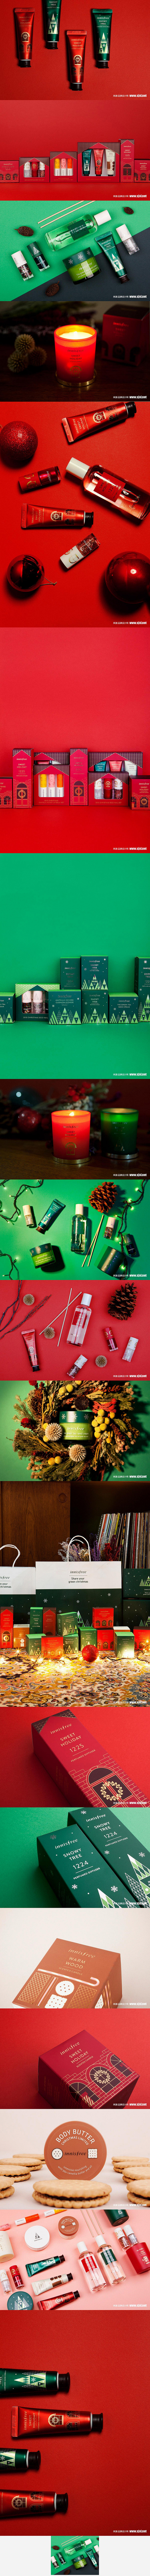 韩国化妆品品牌设计-化妆品包装设计-圣诞...